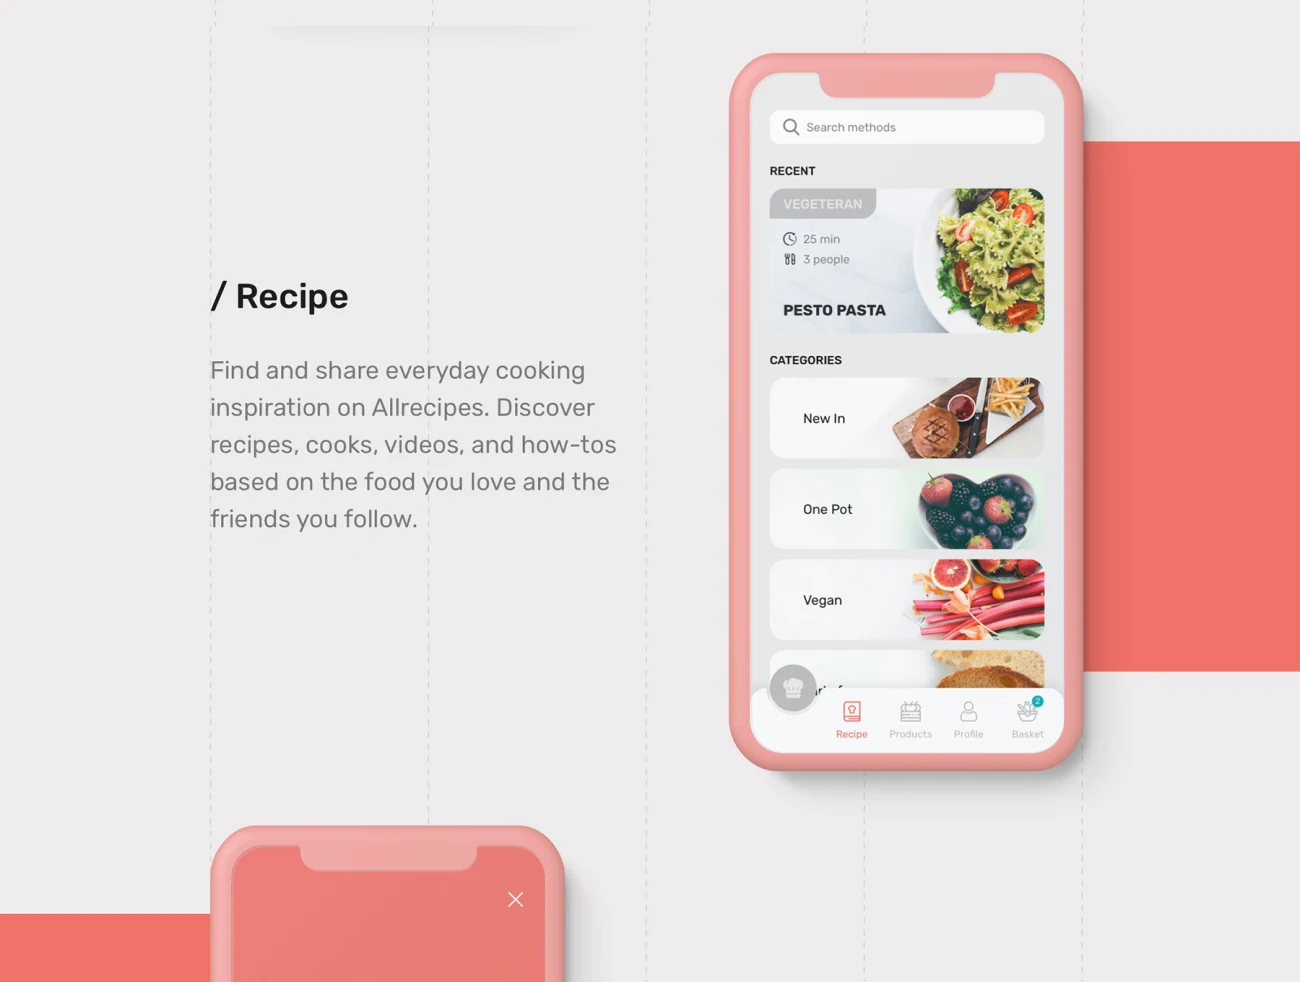 EasyCook Recipes & Groceries UI Kit 40屏美食烹饪食谱用户界面套件-UI/UX-到位啦UI